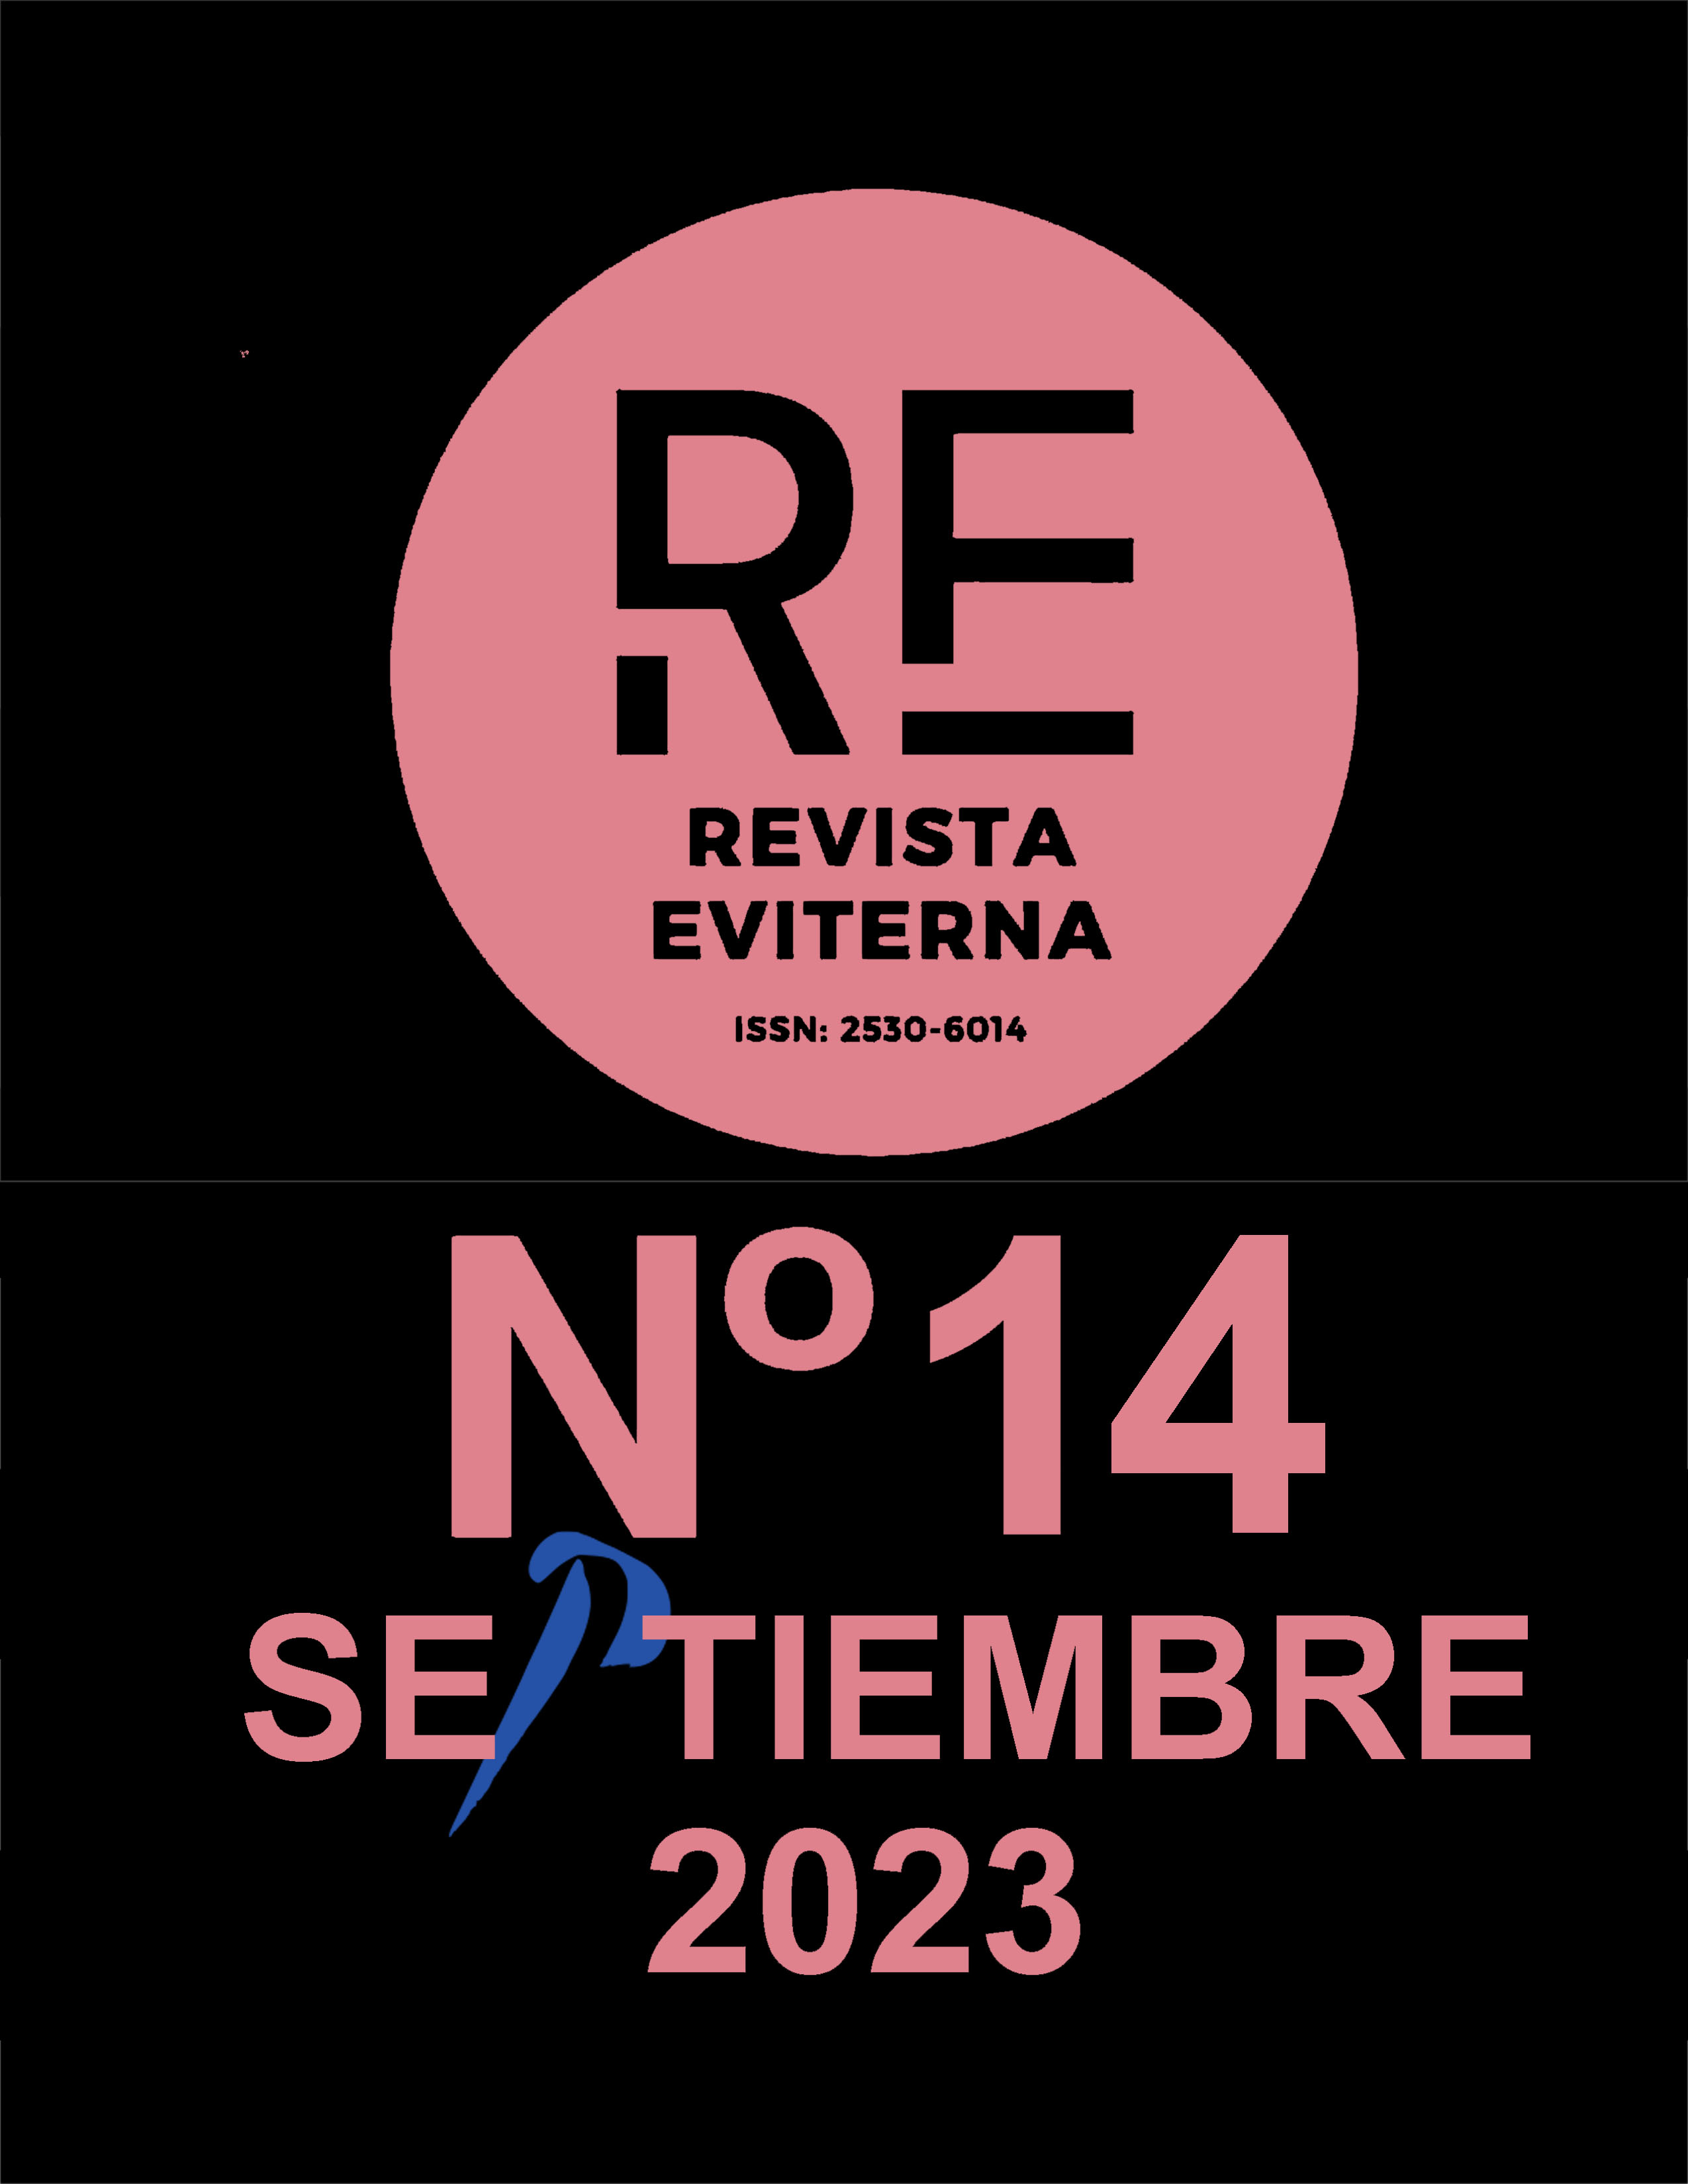 					Ver Núm. 14 (2023): Eviterna nº 14, septiembre 2023 ¿Aún interesa Picasso? Revisiones, perspectivas y proyecciones
				